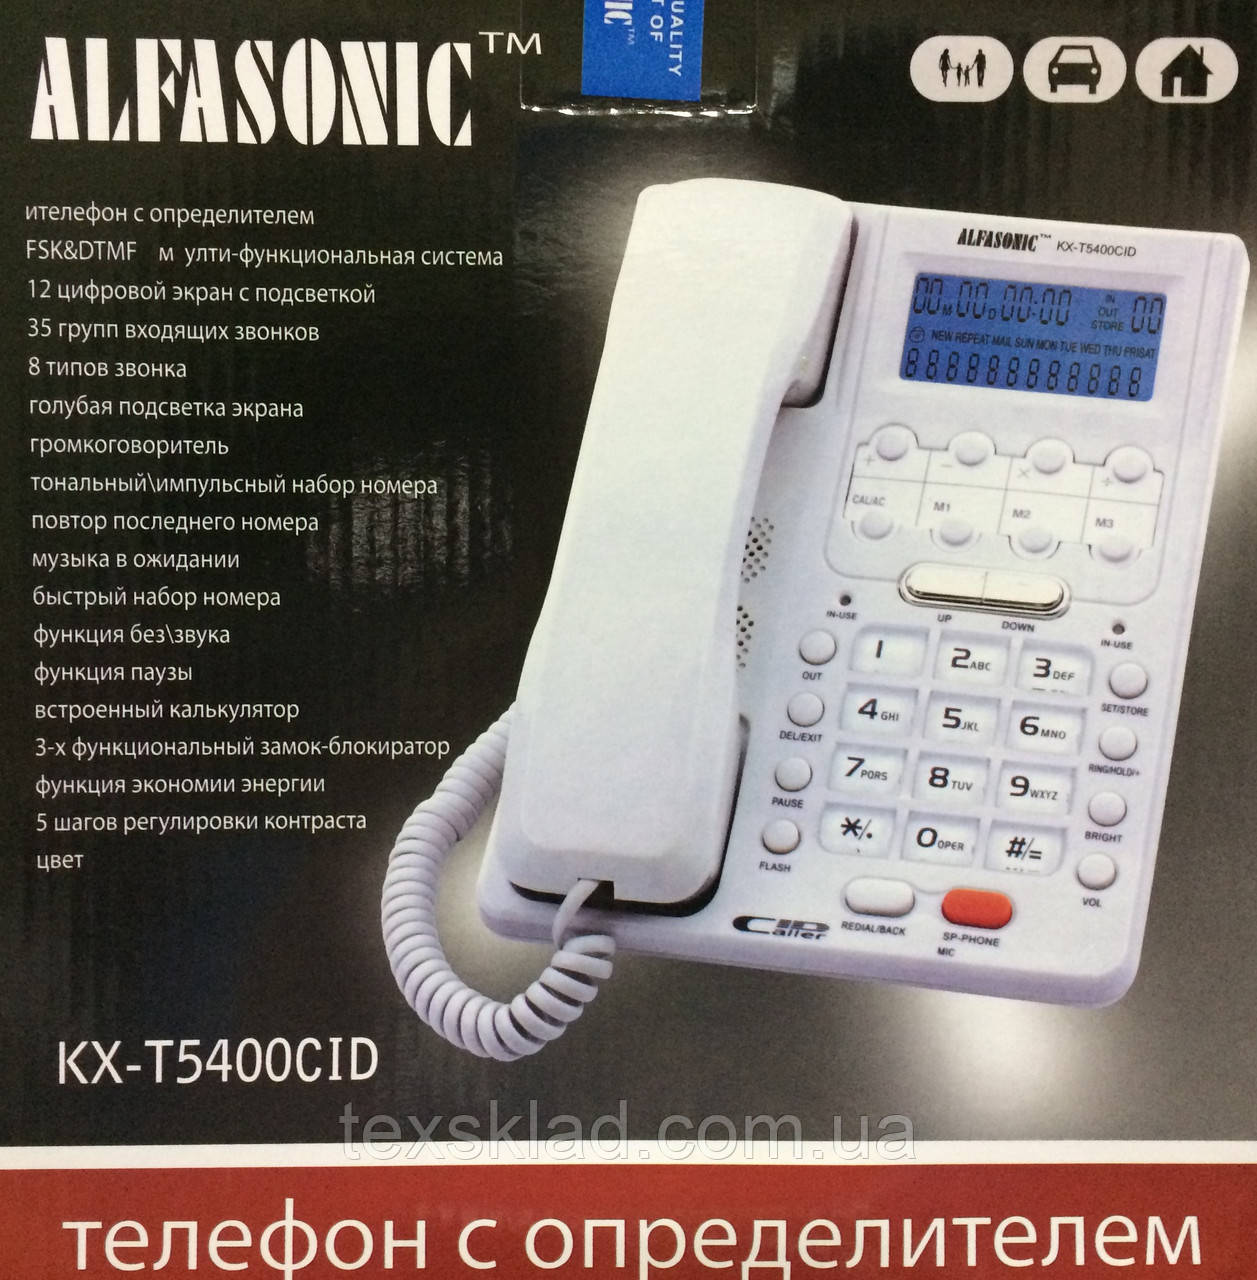 Alfasonic KX-T5400CID Телефон із визначником номера